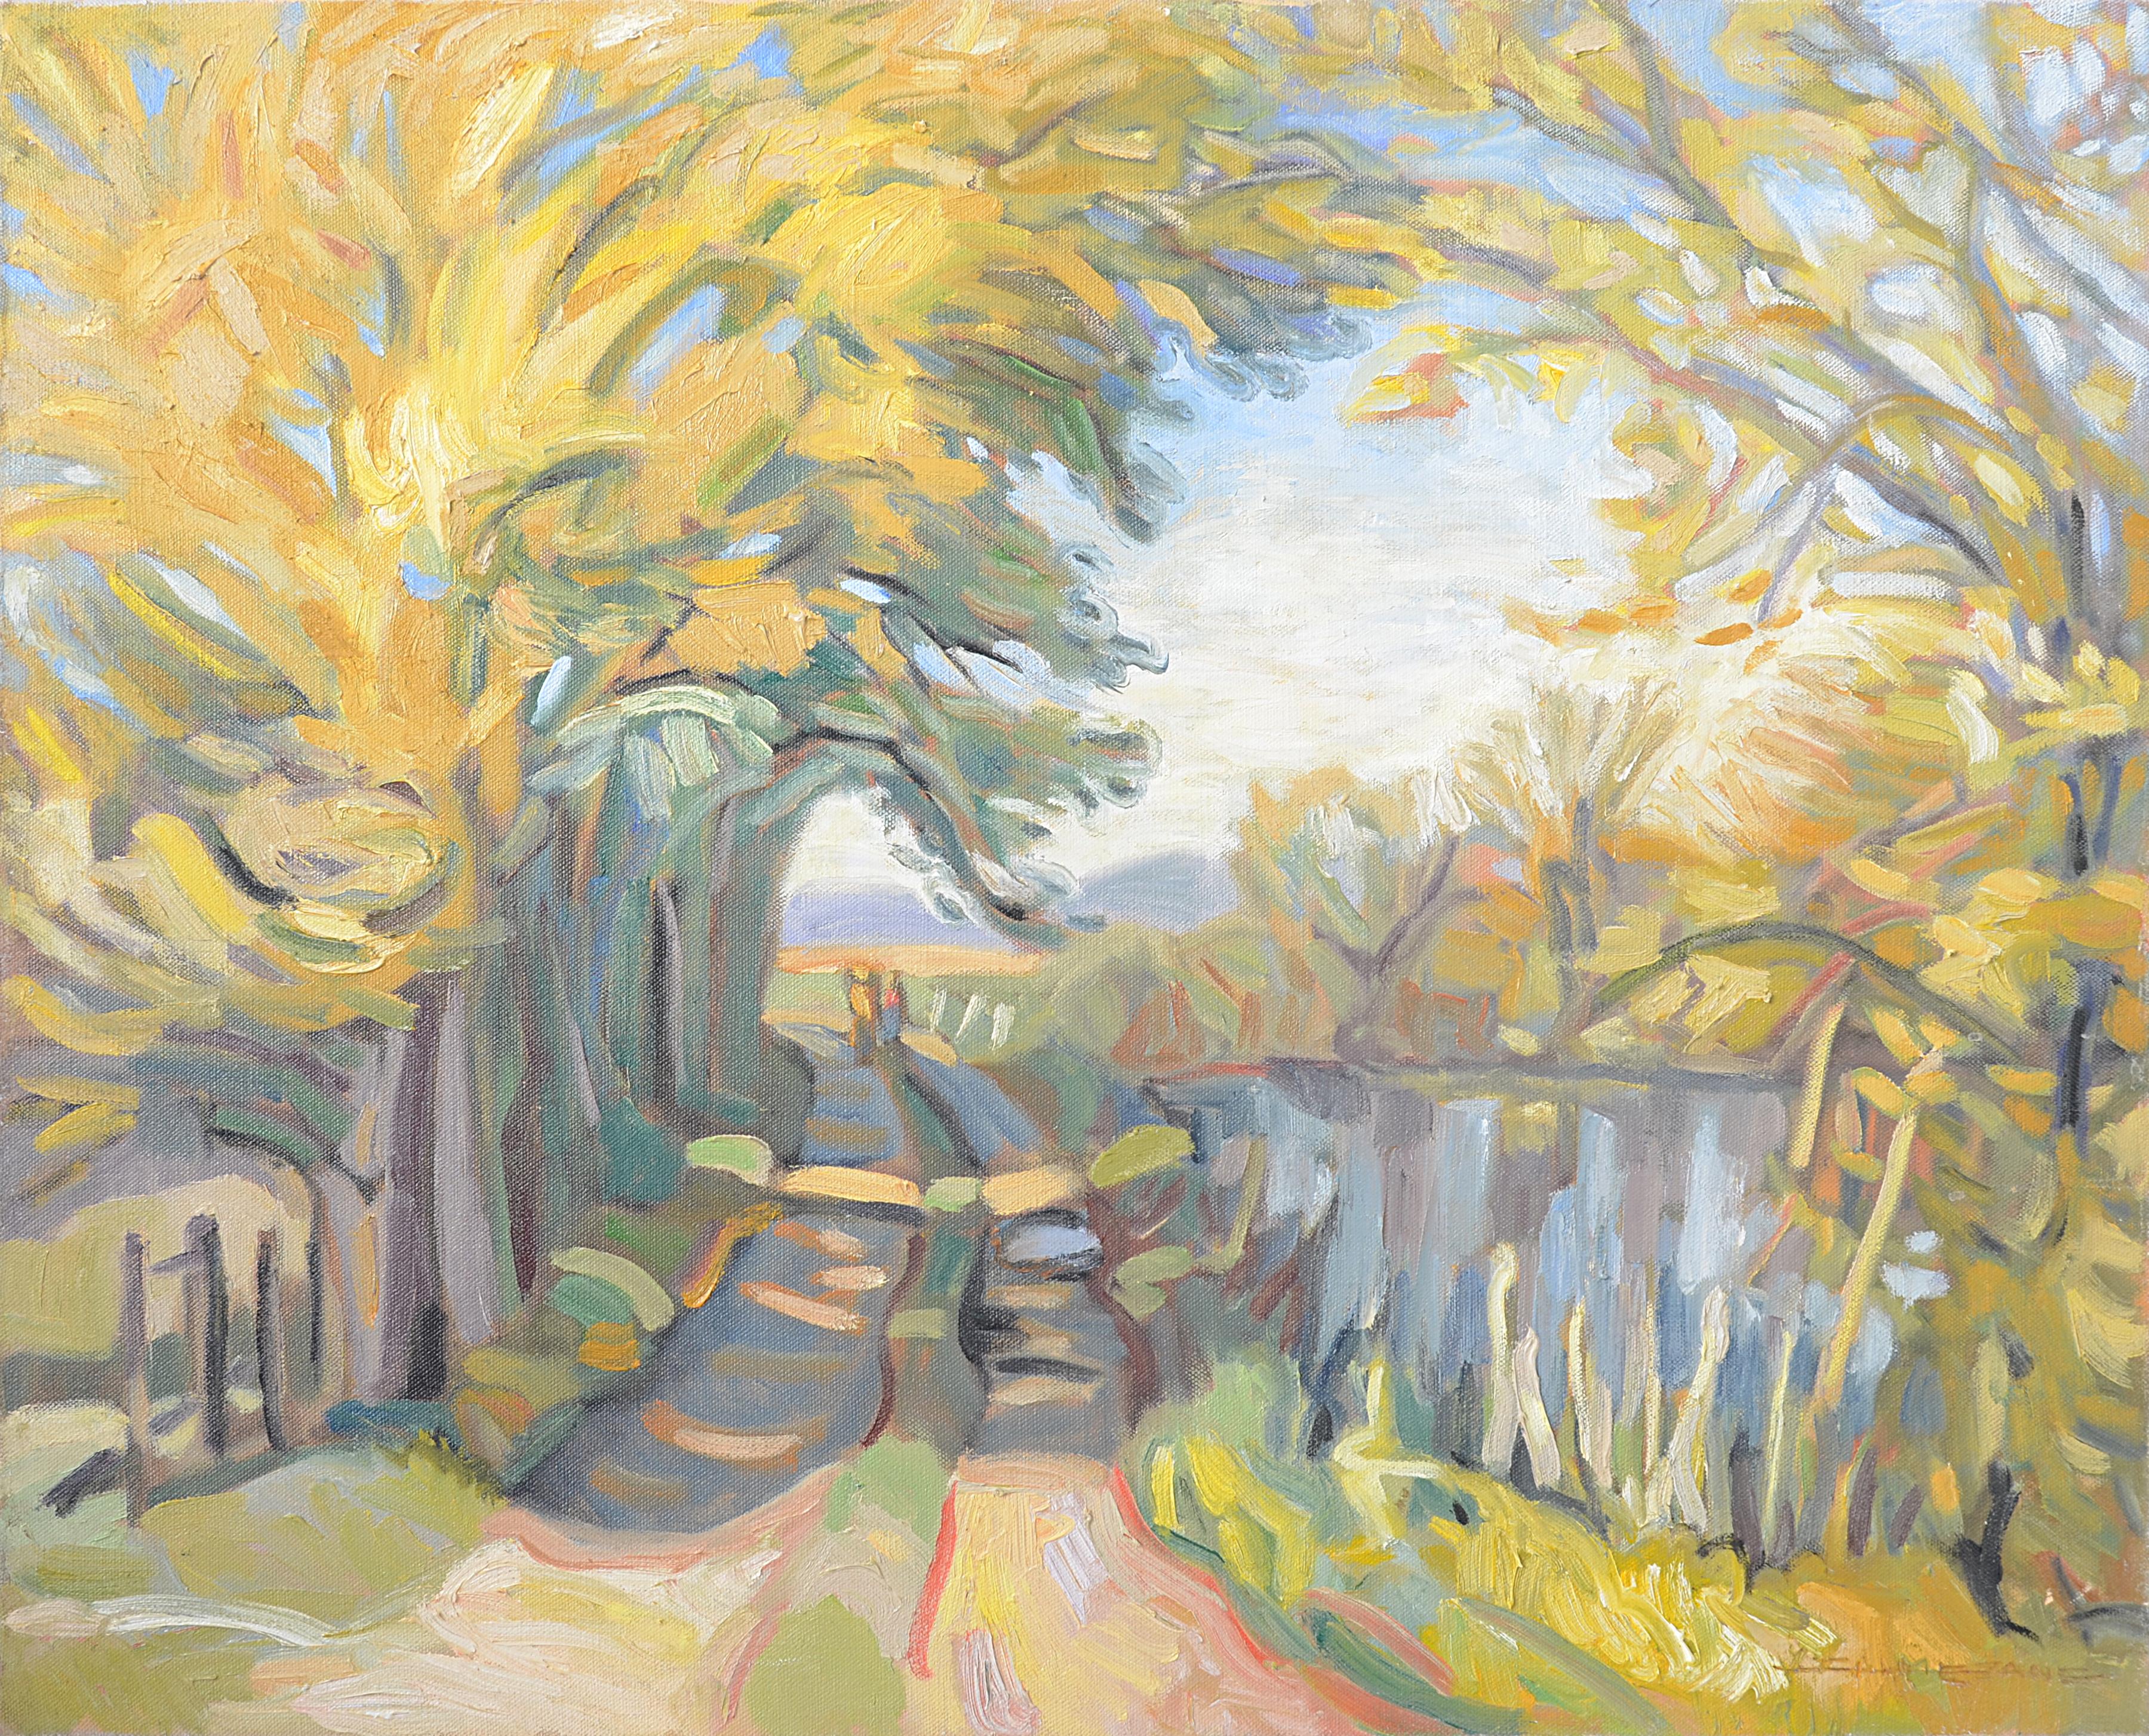 Yves Calméjane Landscape Painting - "Beside the Pond" ("Au bord de l'étang"), Impressionist Landscape Oil Painting